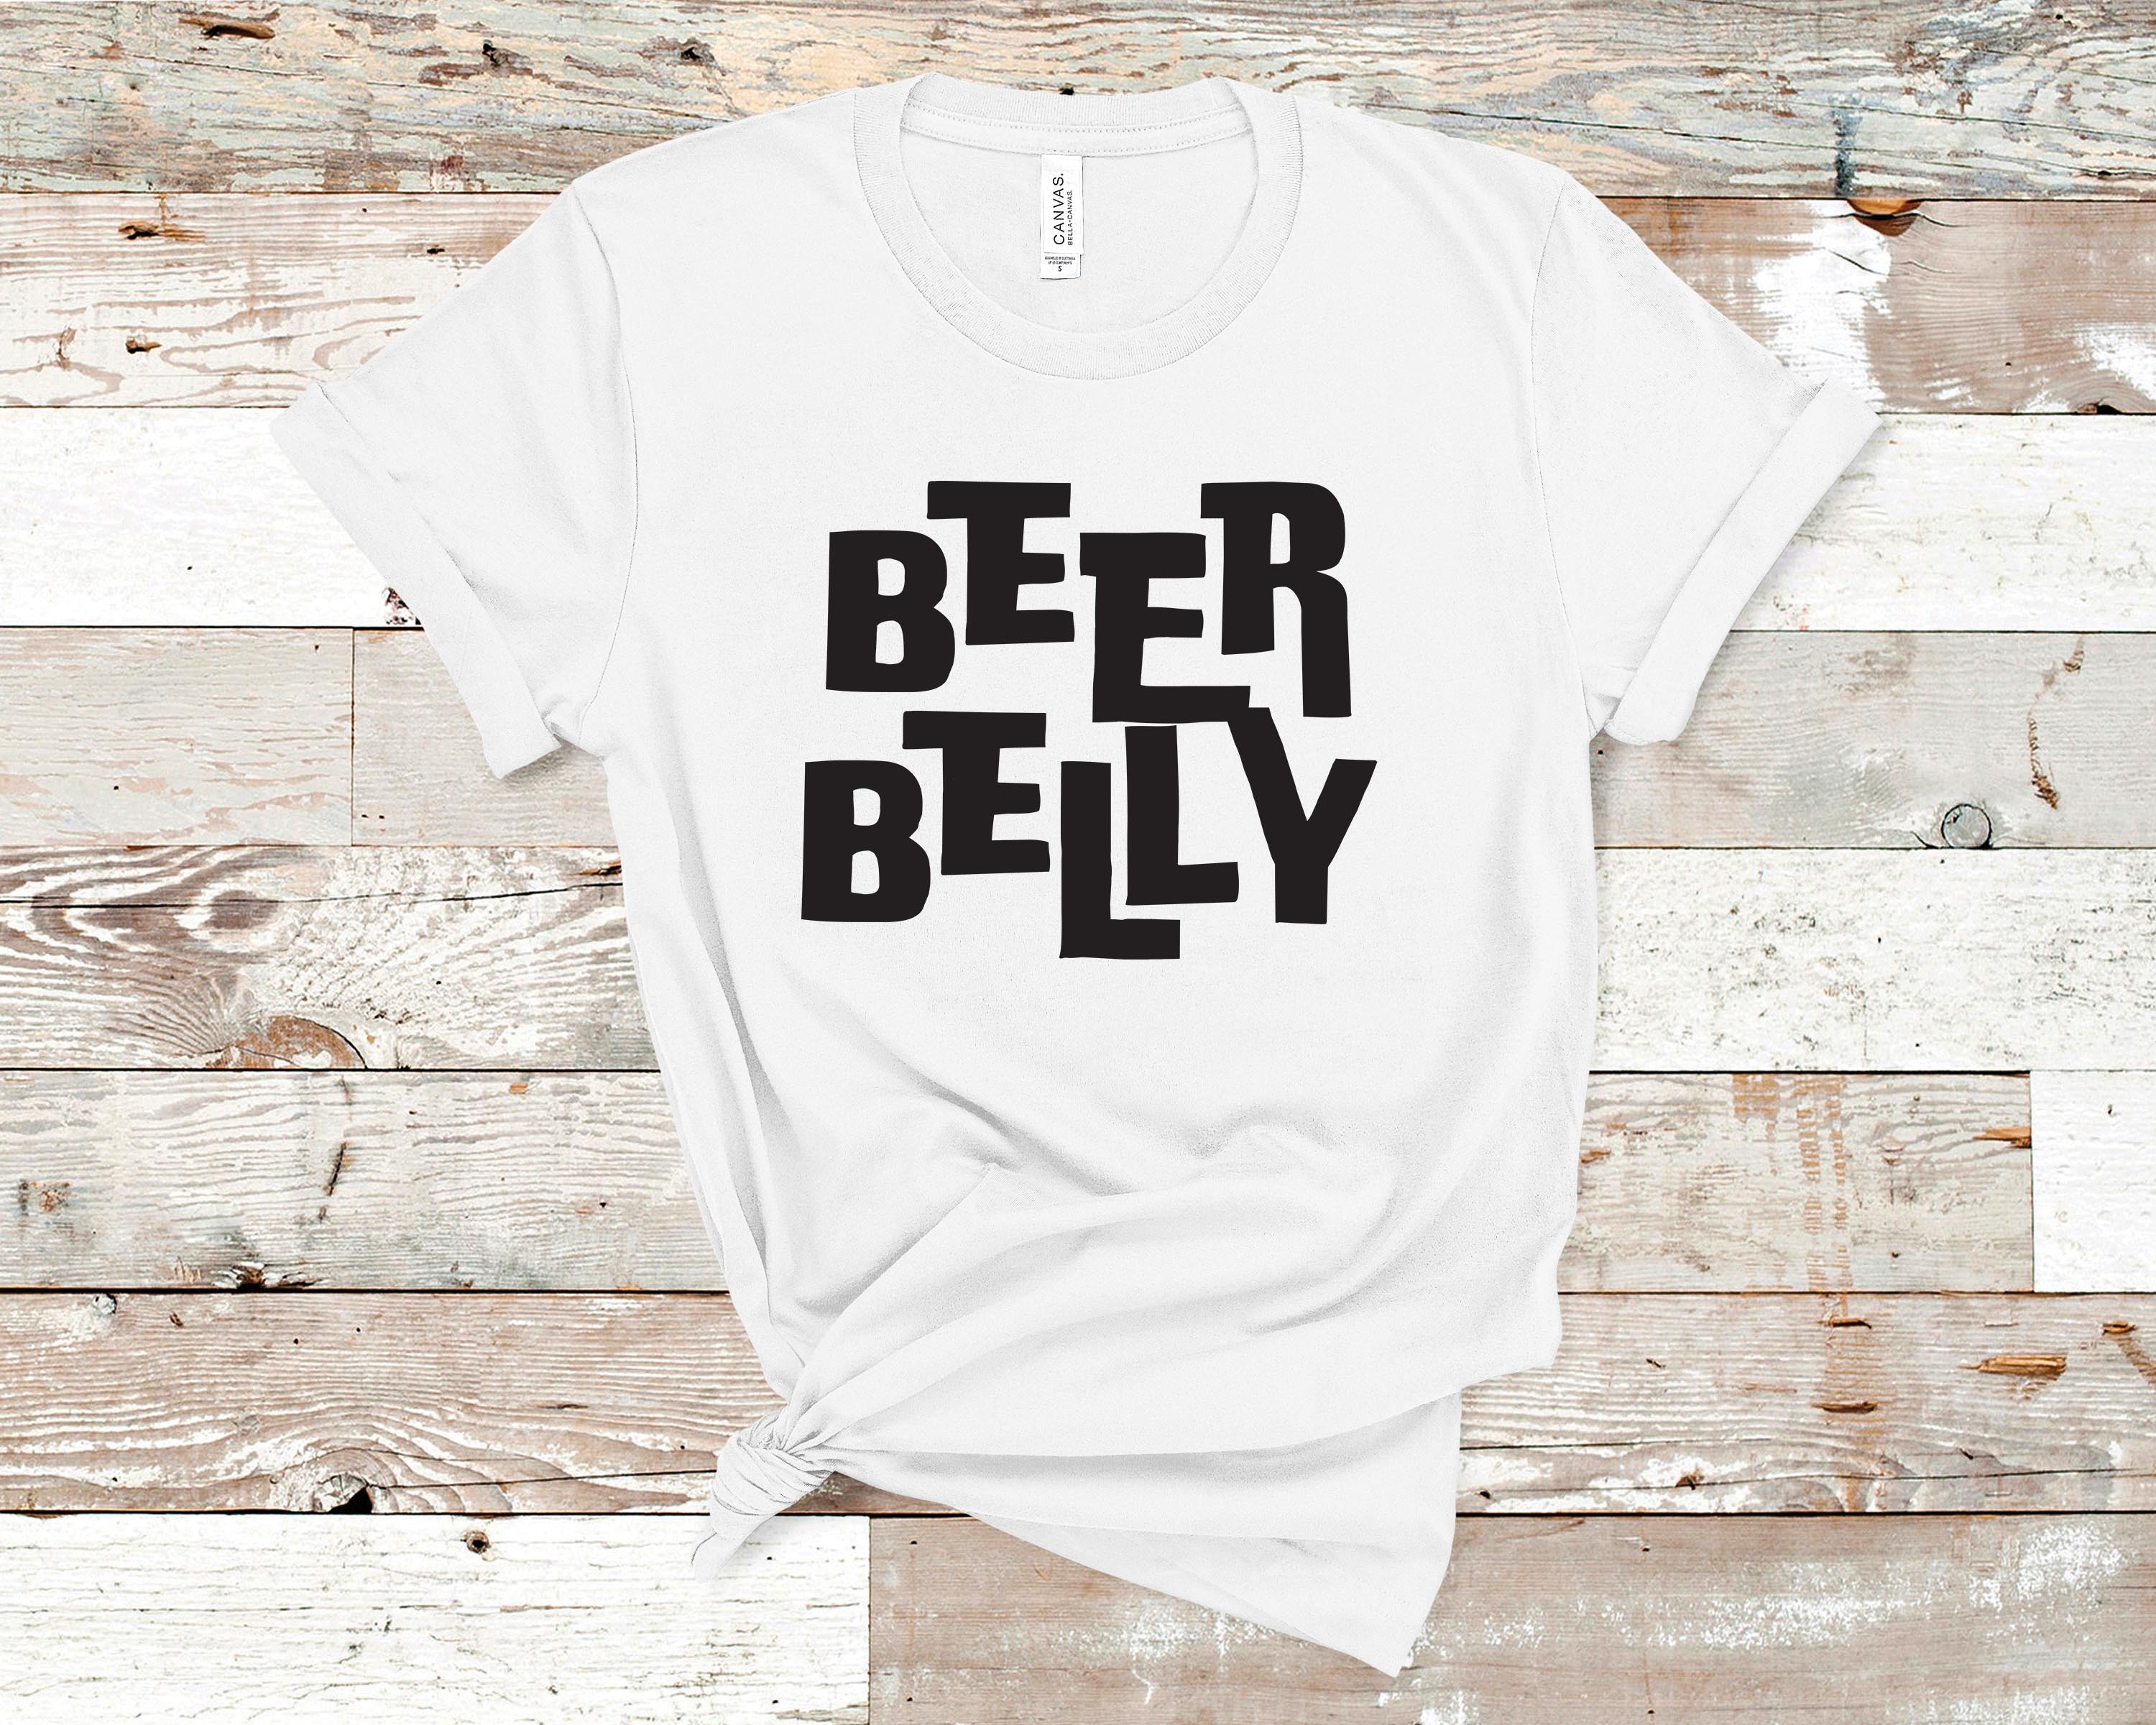 Mediate Ikke nok helbrede Beer Belly Shirt | Pregnancy T-shirt, Preggy Shirt, Maternity Design TShirt  – SeyerDesigns